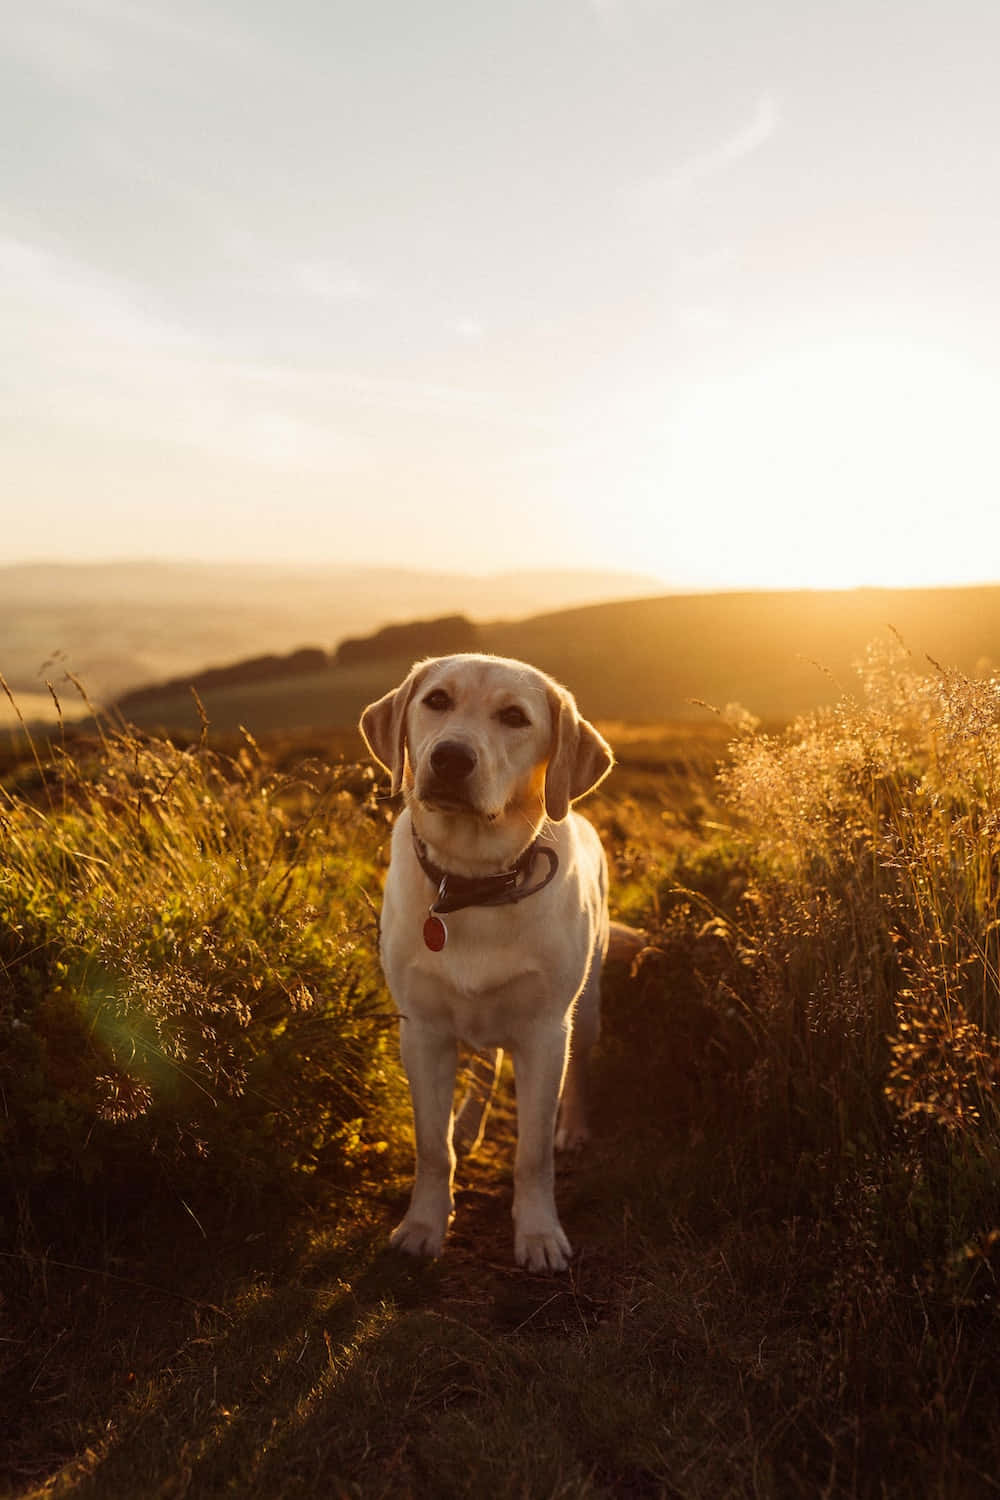 A golden Labrador retriever awaits for a hug